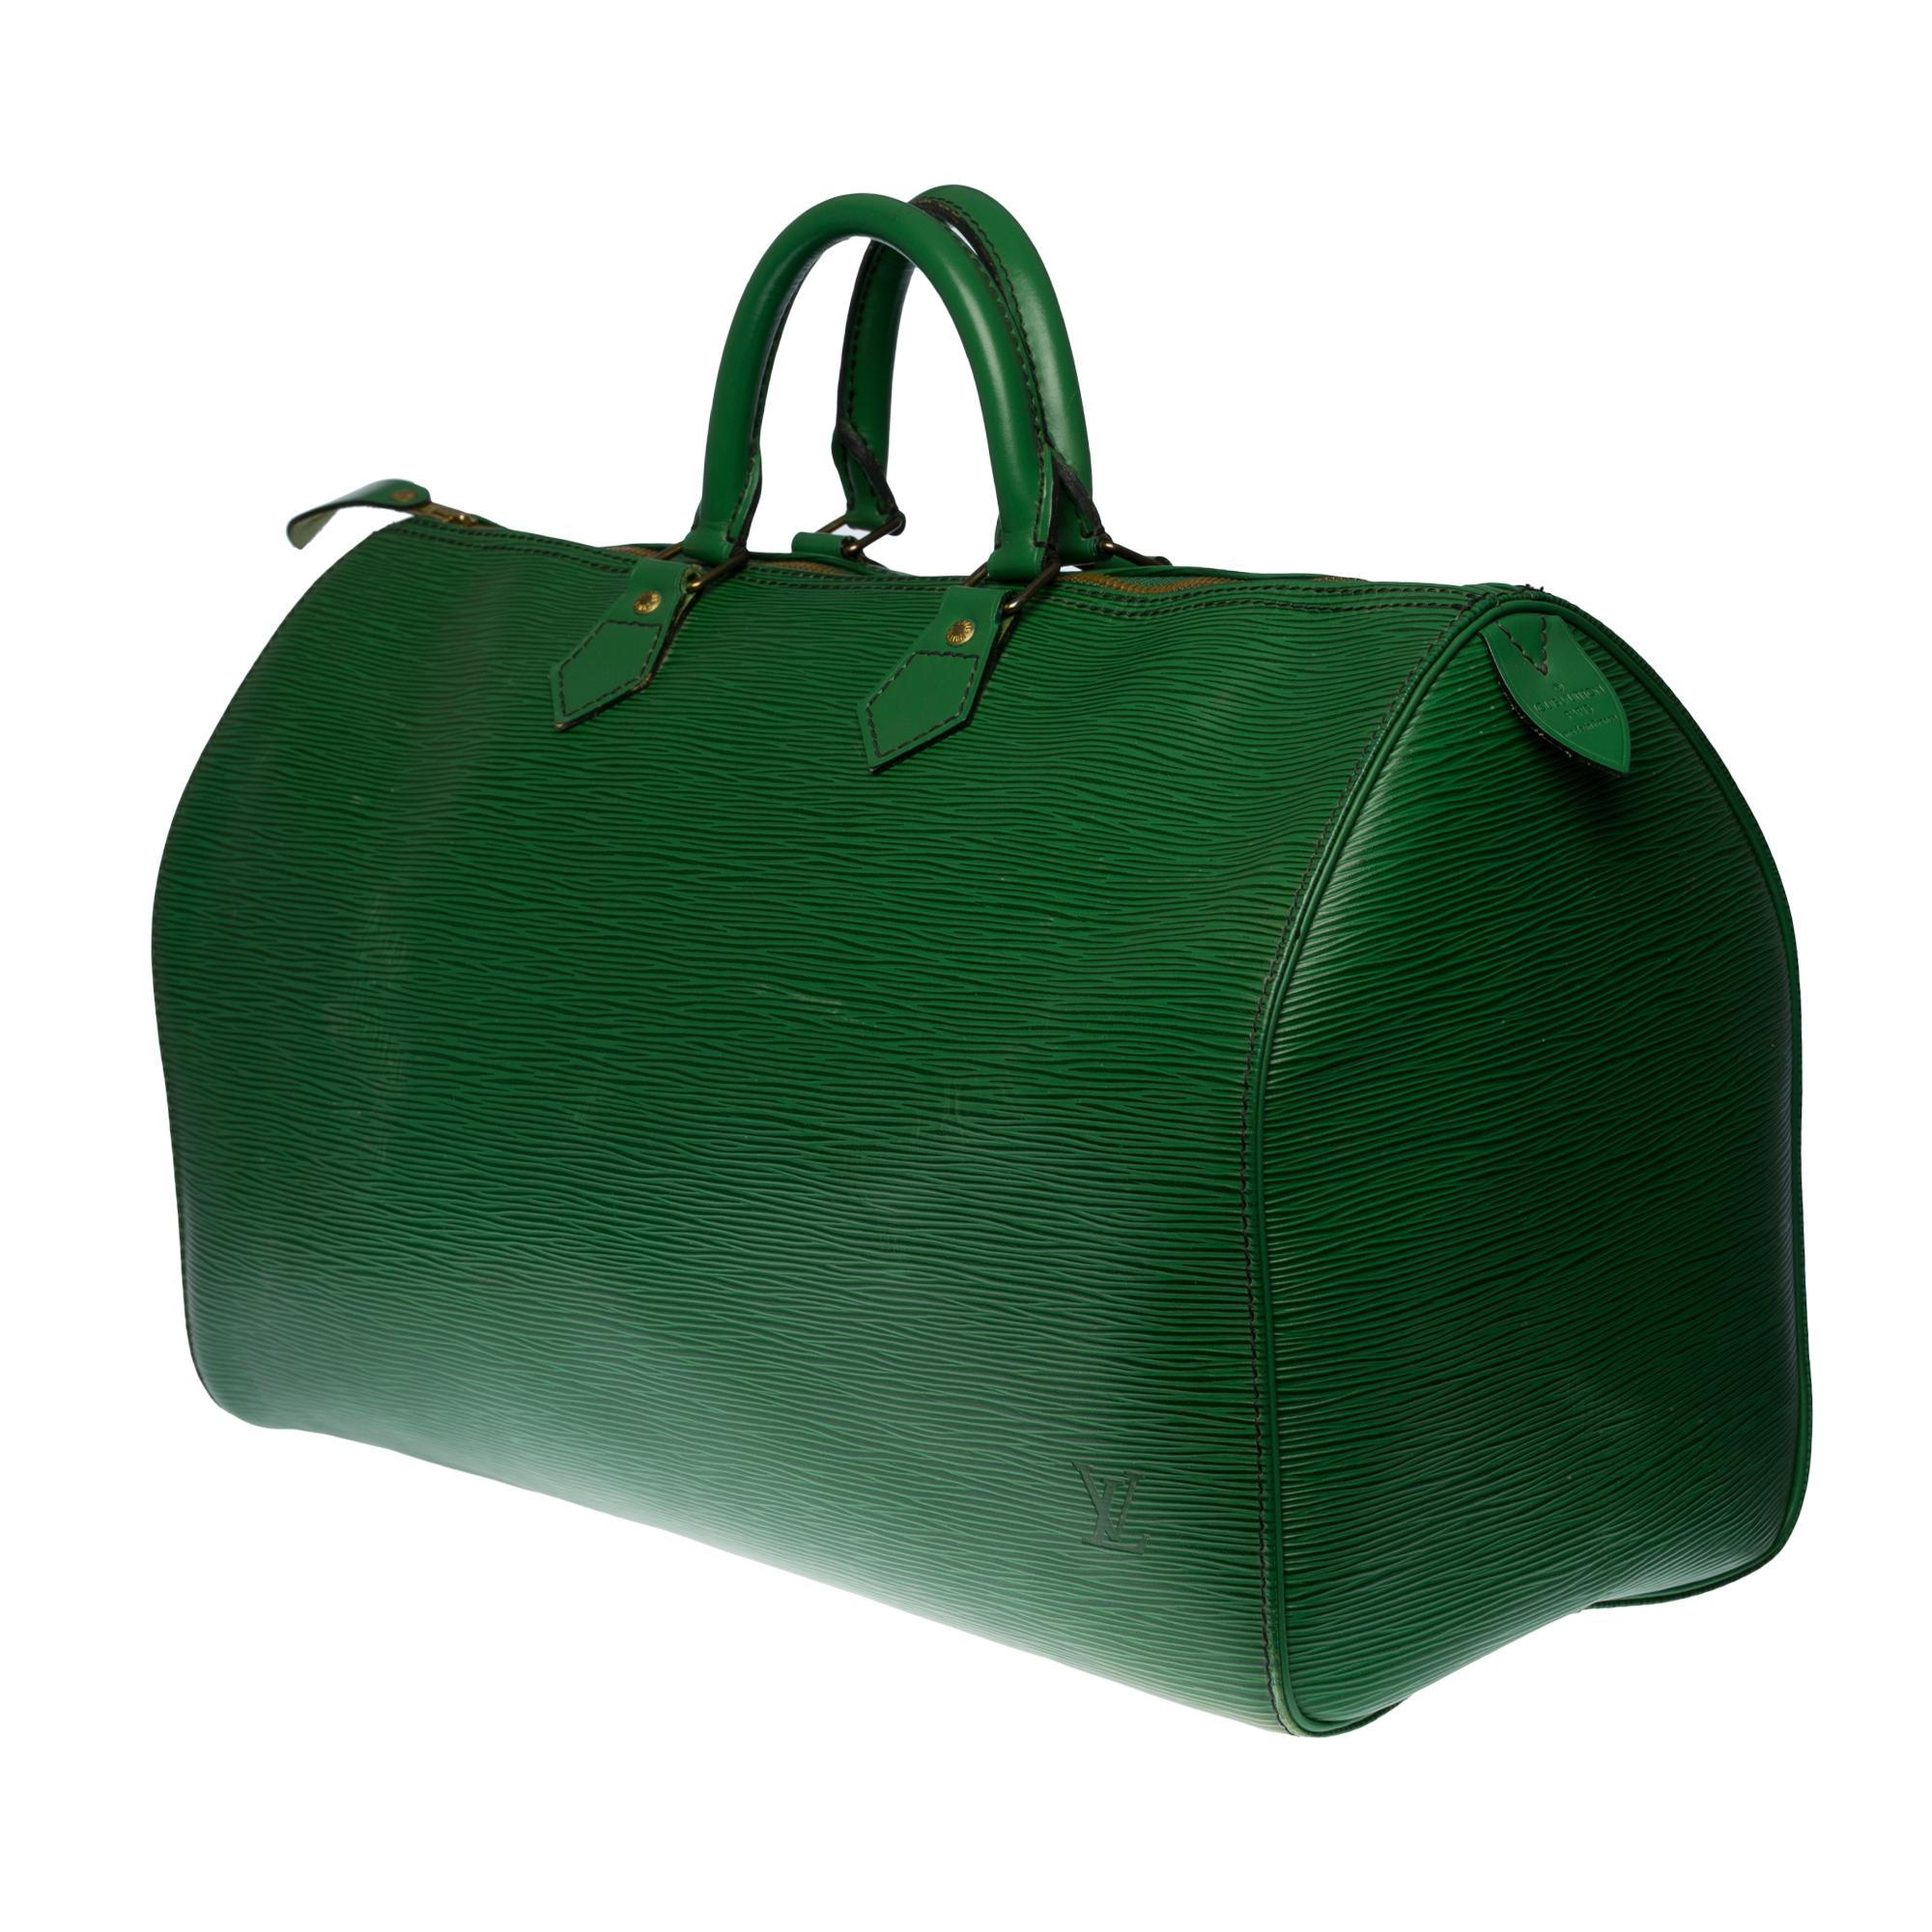 Stunning Louis Vuitton Speedy 40 handbag in green épi leather In Good Condition In Paris, IDF